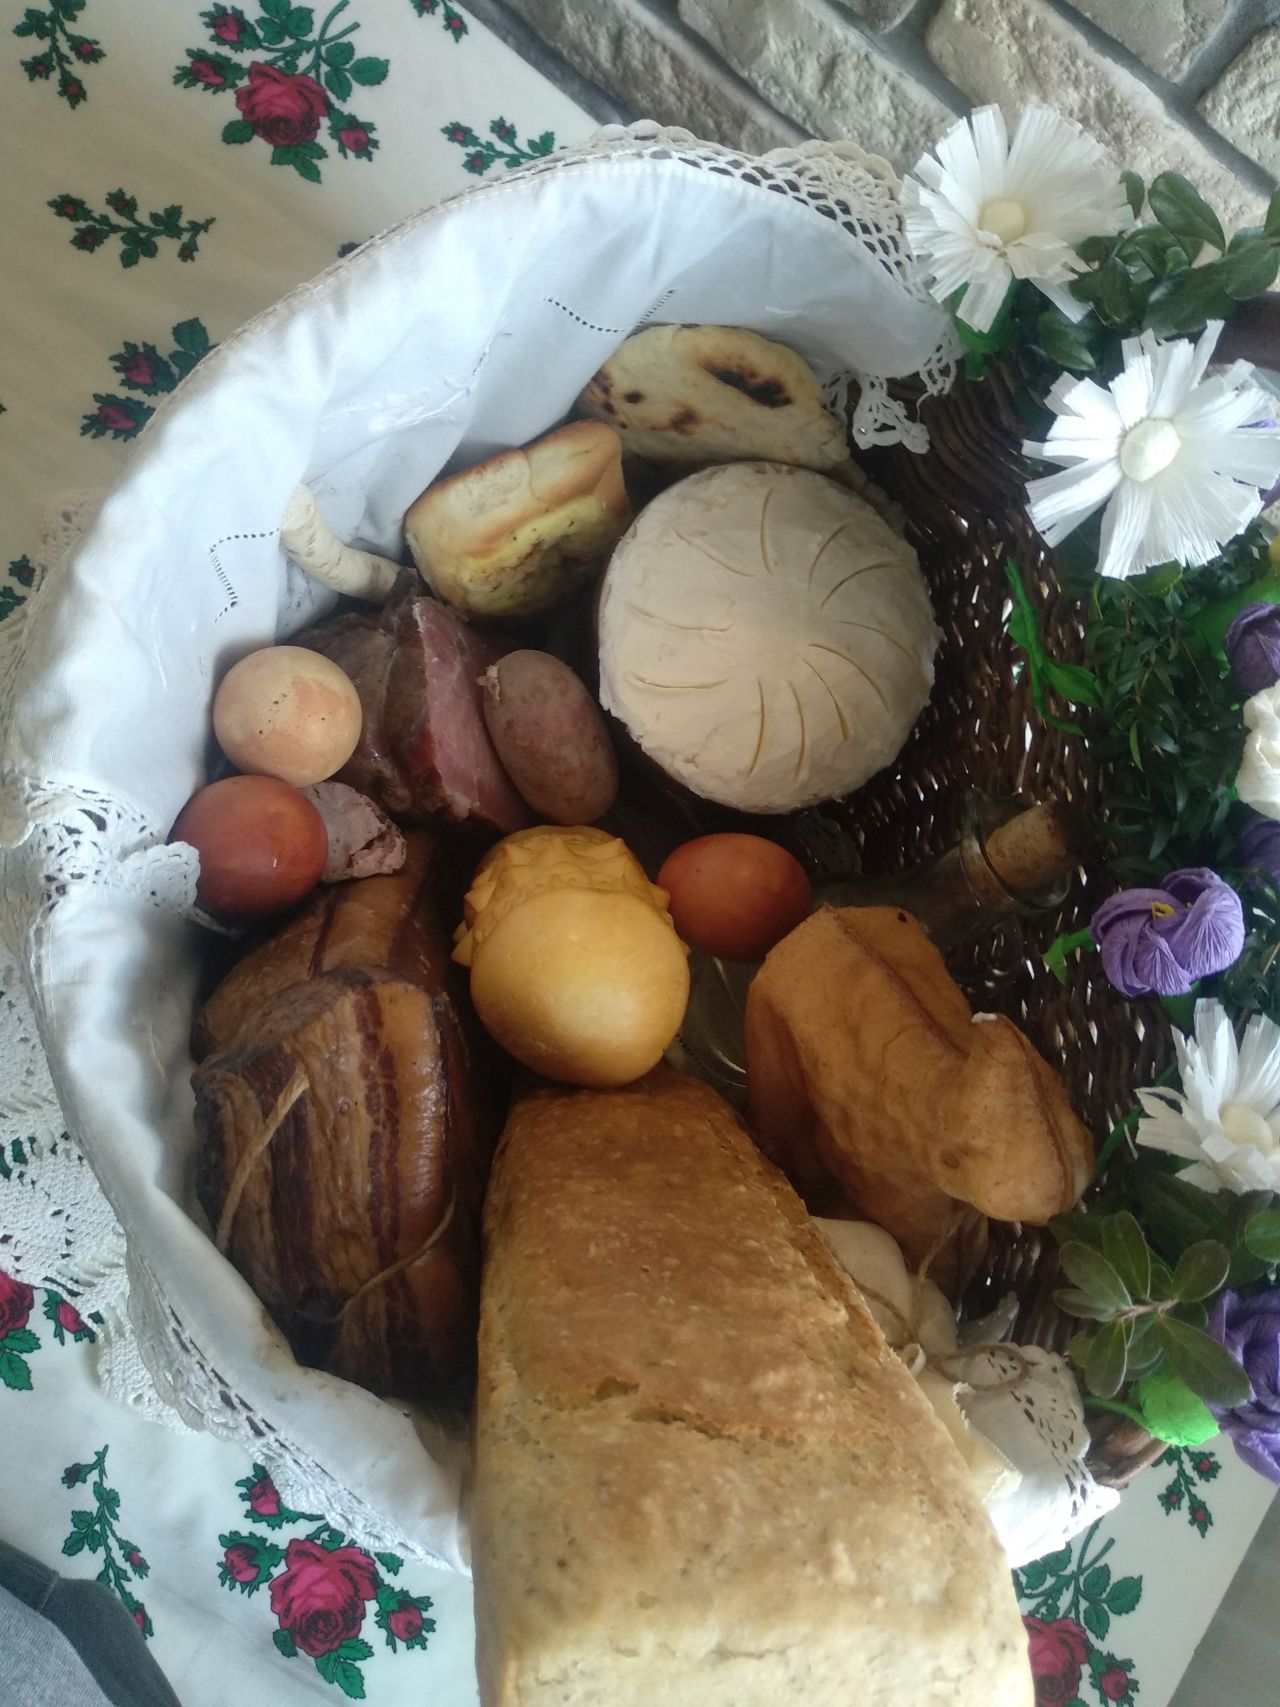 wnętrze wiklinowego koszyka z góry, w środku na białej serwecie chleb z formy, sery, baranek, jajka barwione na ciemnoczerwono, wędliny i inne wiktuały 